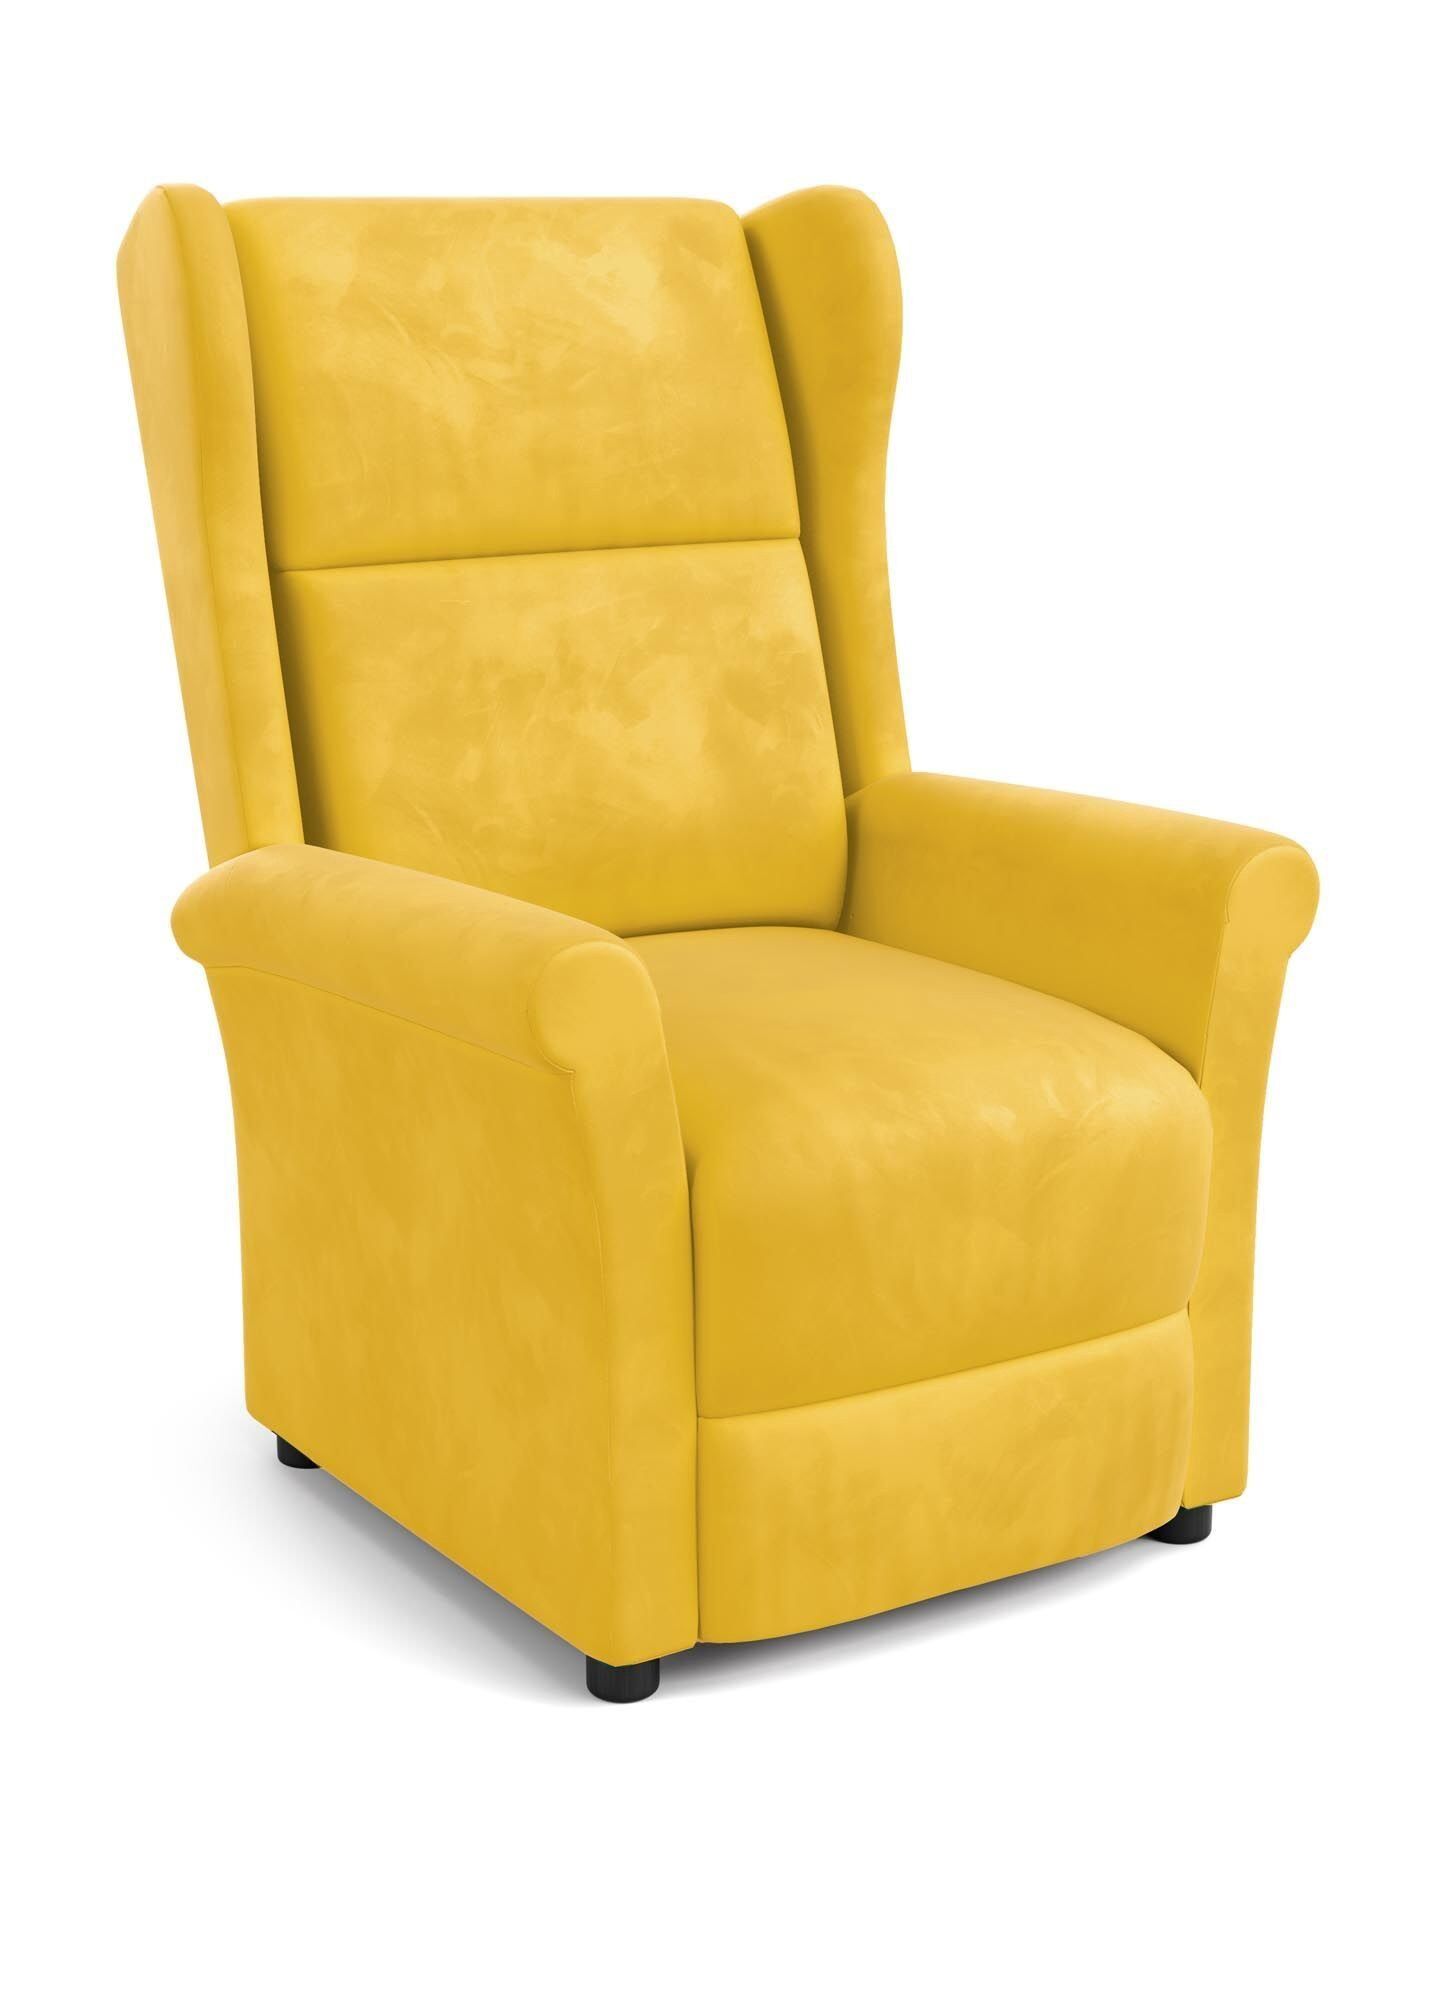 Горчичное кресло. Кресло икеа горчичное. Кресло реклайнер горчичное. Желтое кресло. Кресло раскладное.